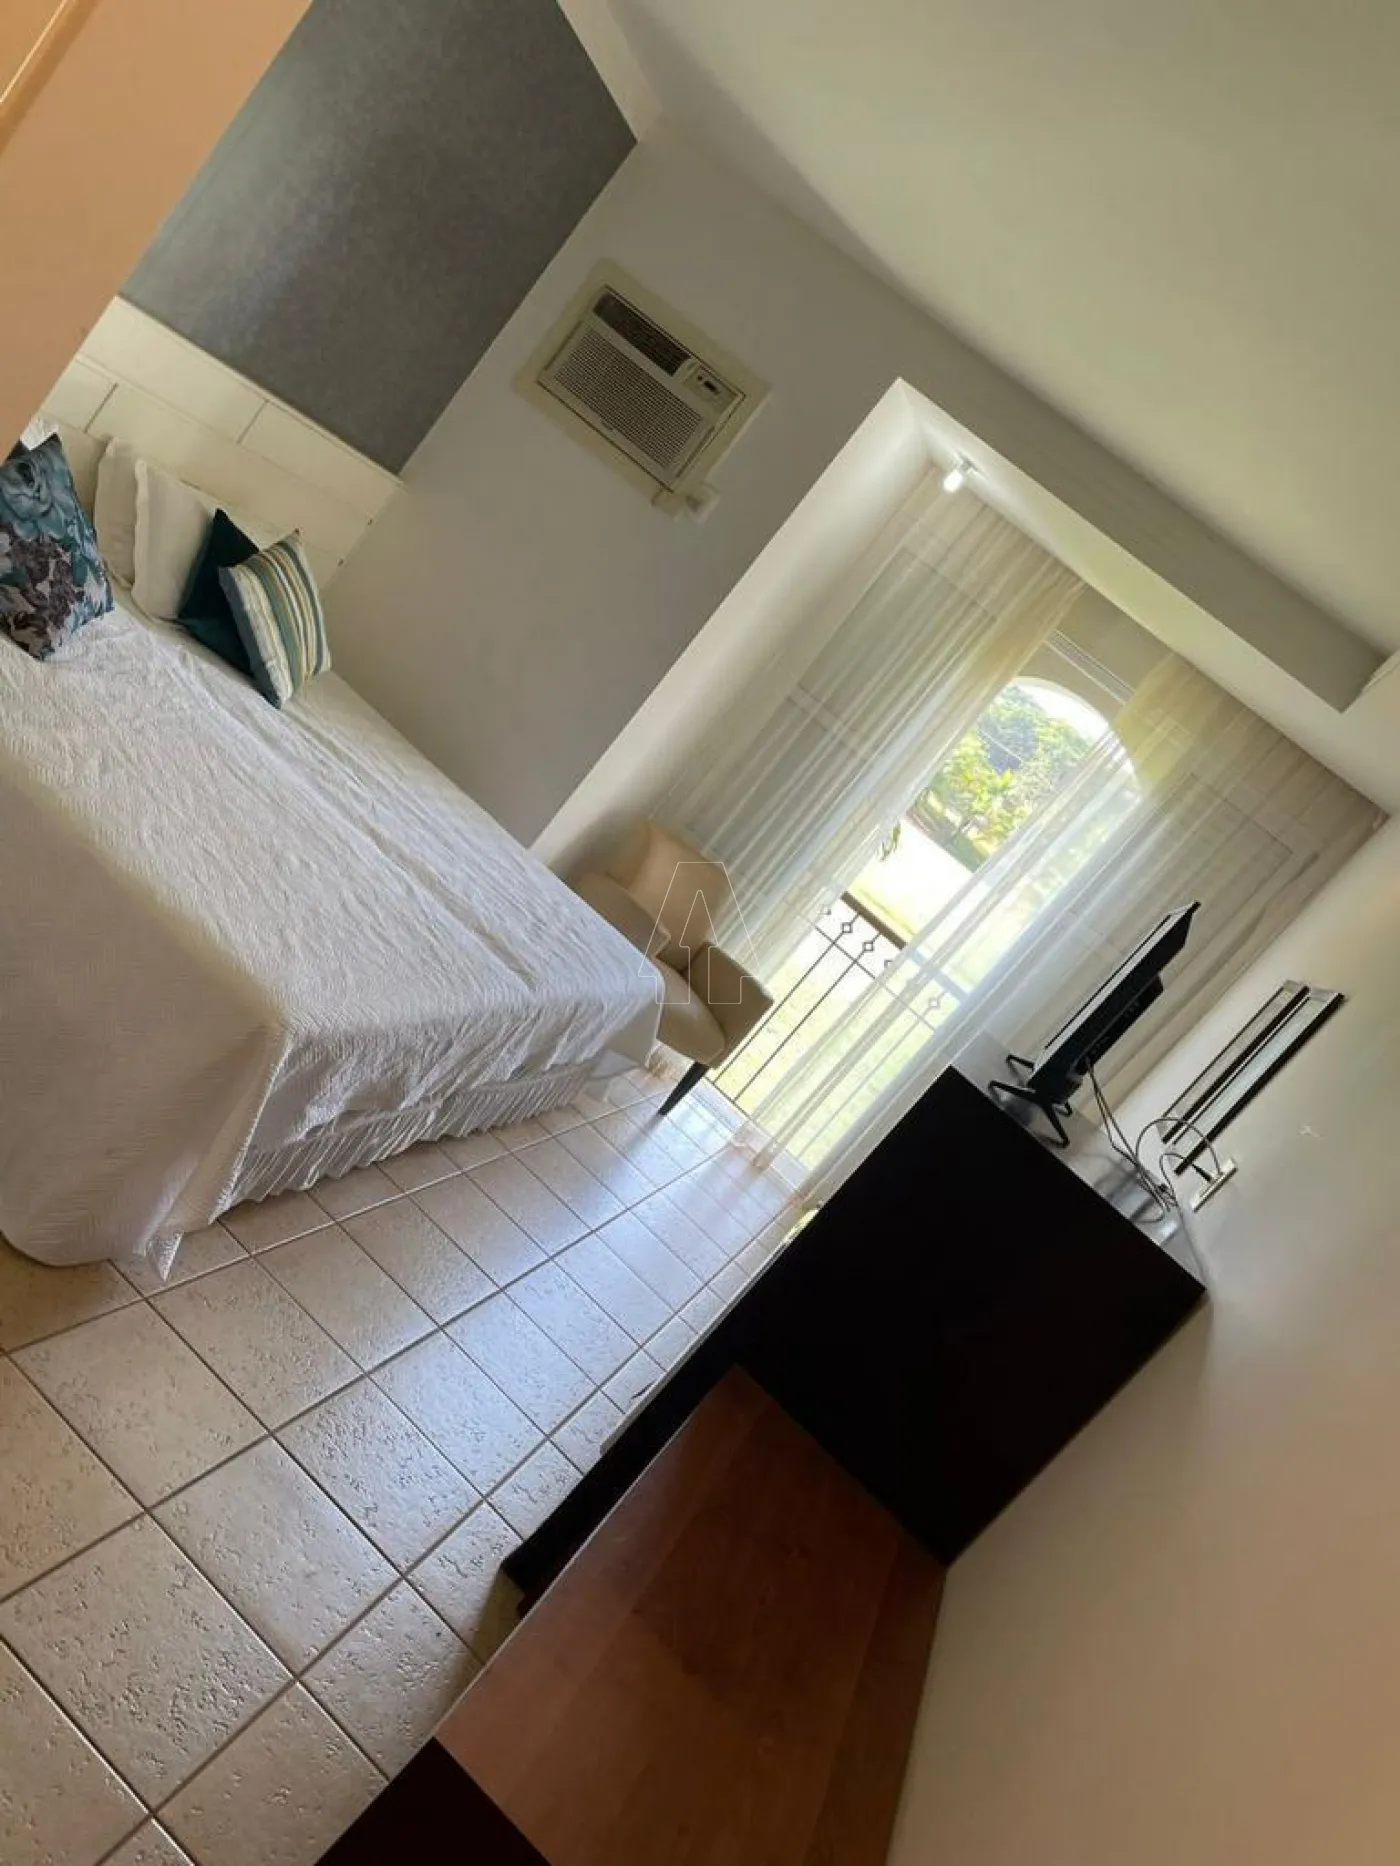 Comprar Apartamento / Padrão em Araçatuba R$ 250.000,00 - Foto 11